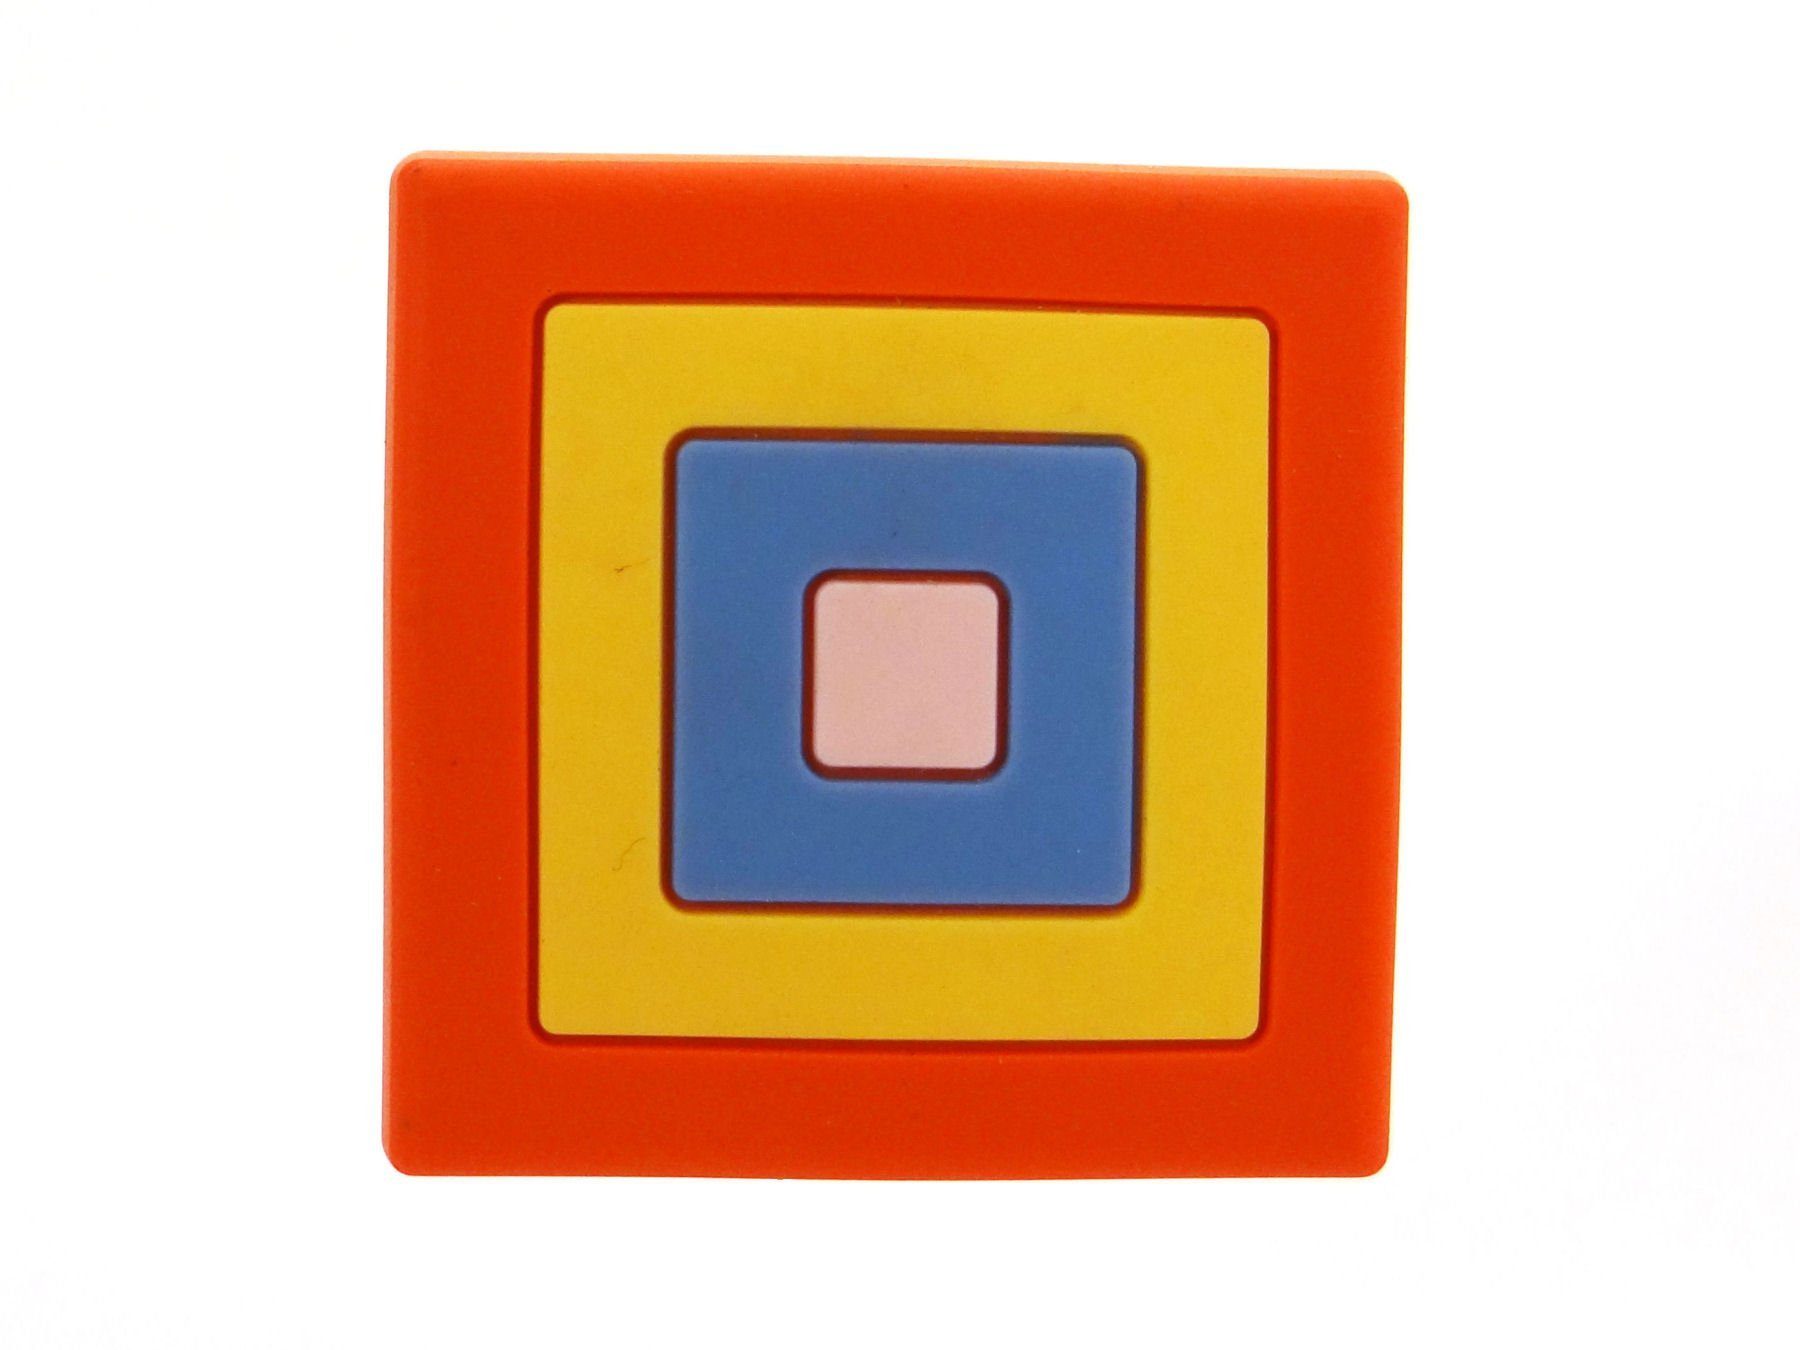 incl. aus Gummi, für Quadrat SO-TECH® Knopf Schraube Knauf Möbelknopf Kindermöbelknopf Kinderzimmer bunt